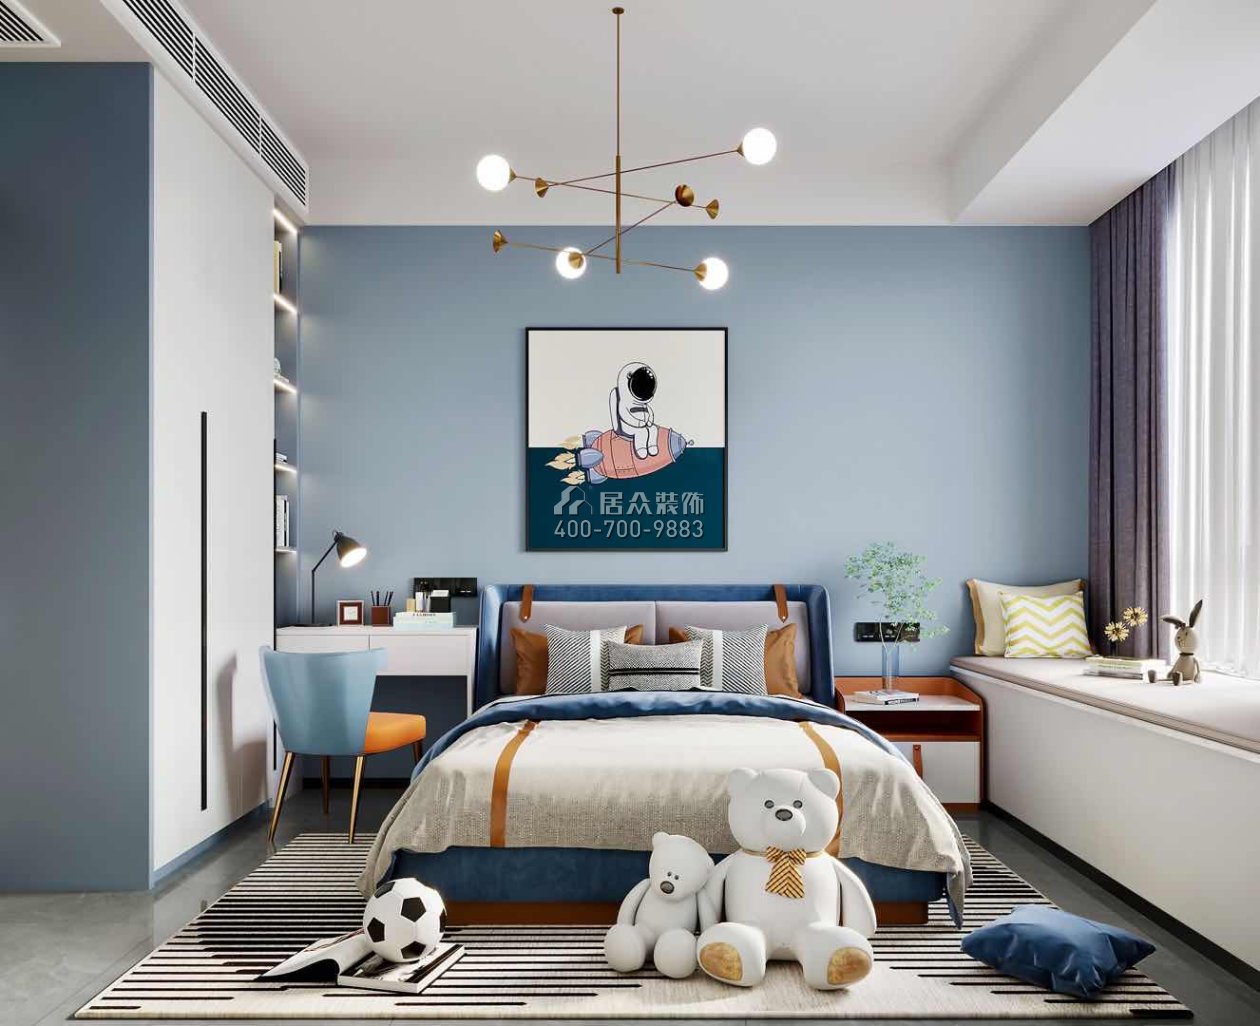 翠湖香山150平方米现代简约风格平层户型卧室装修效果图